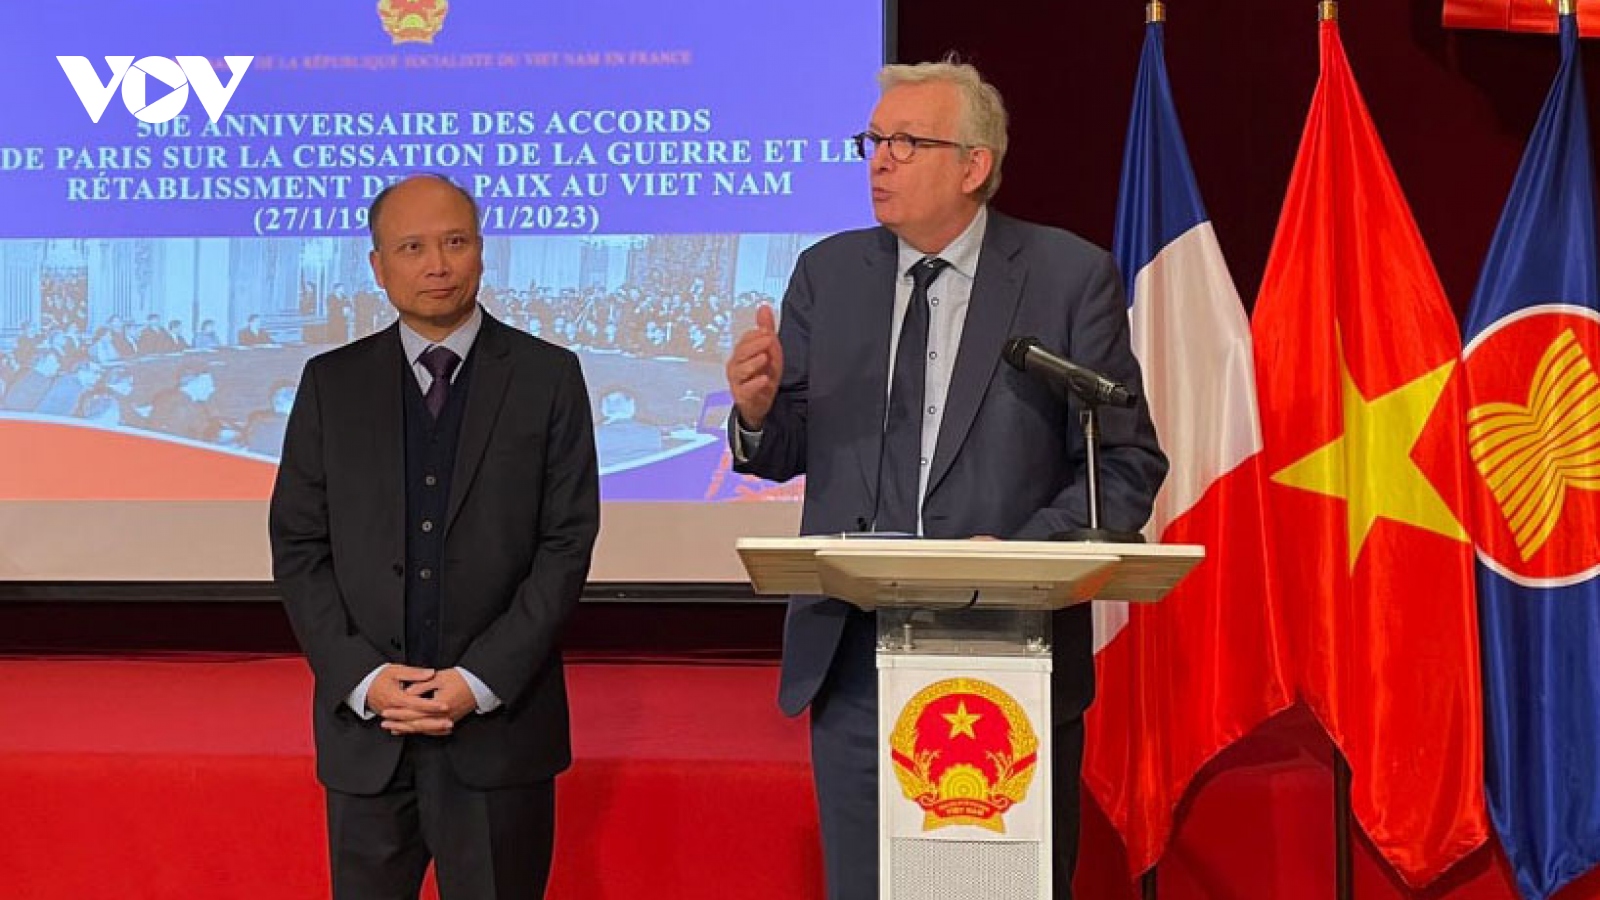 Đại sứ quán Việt Nam tại Pháp kỷ niệm 50 năm ngày ký Hiệp định Paris 